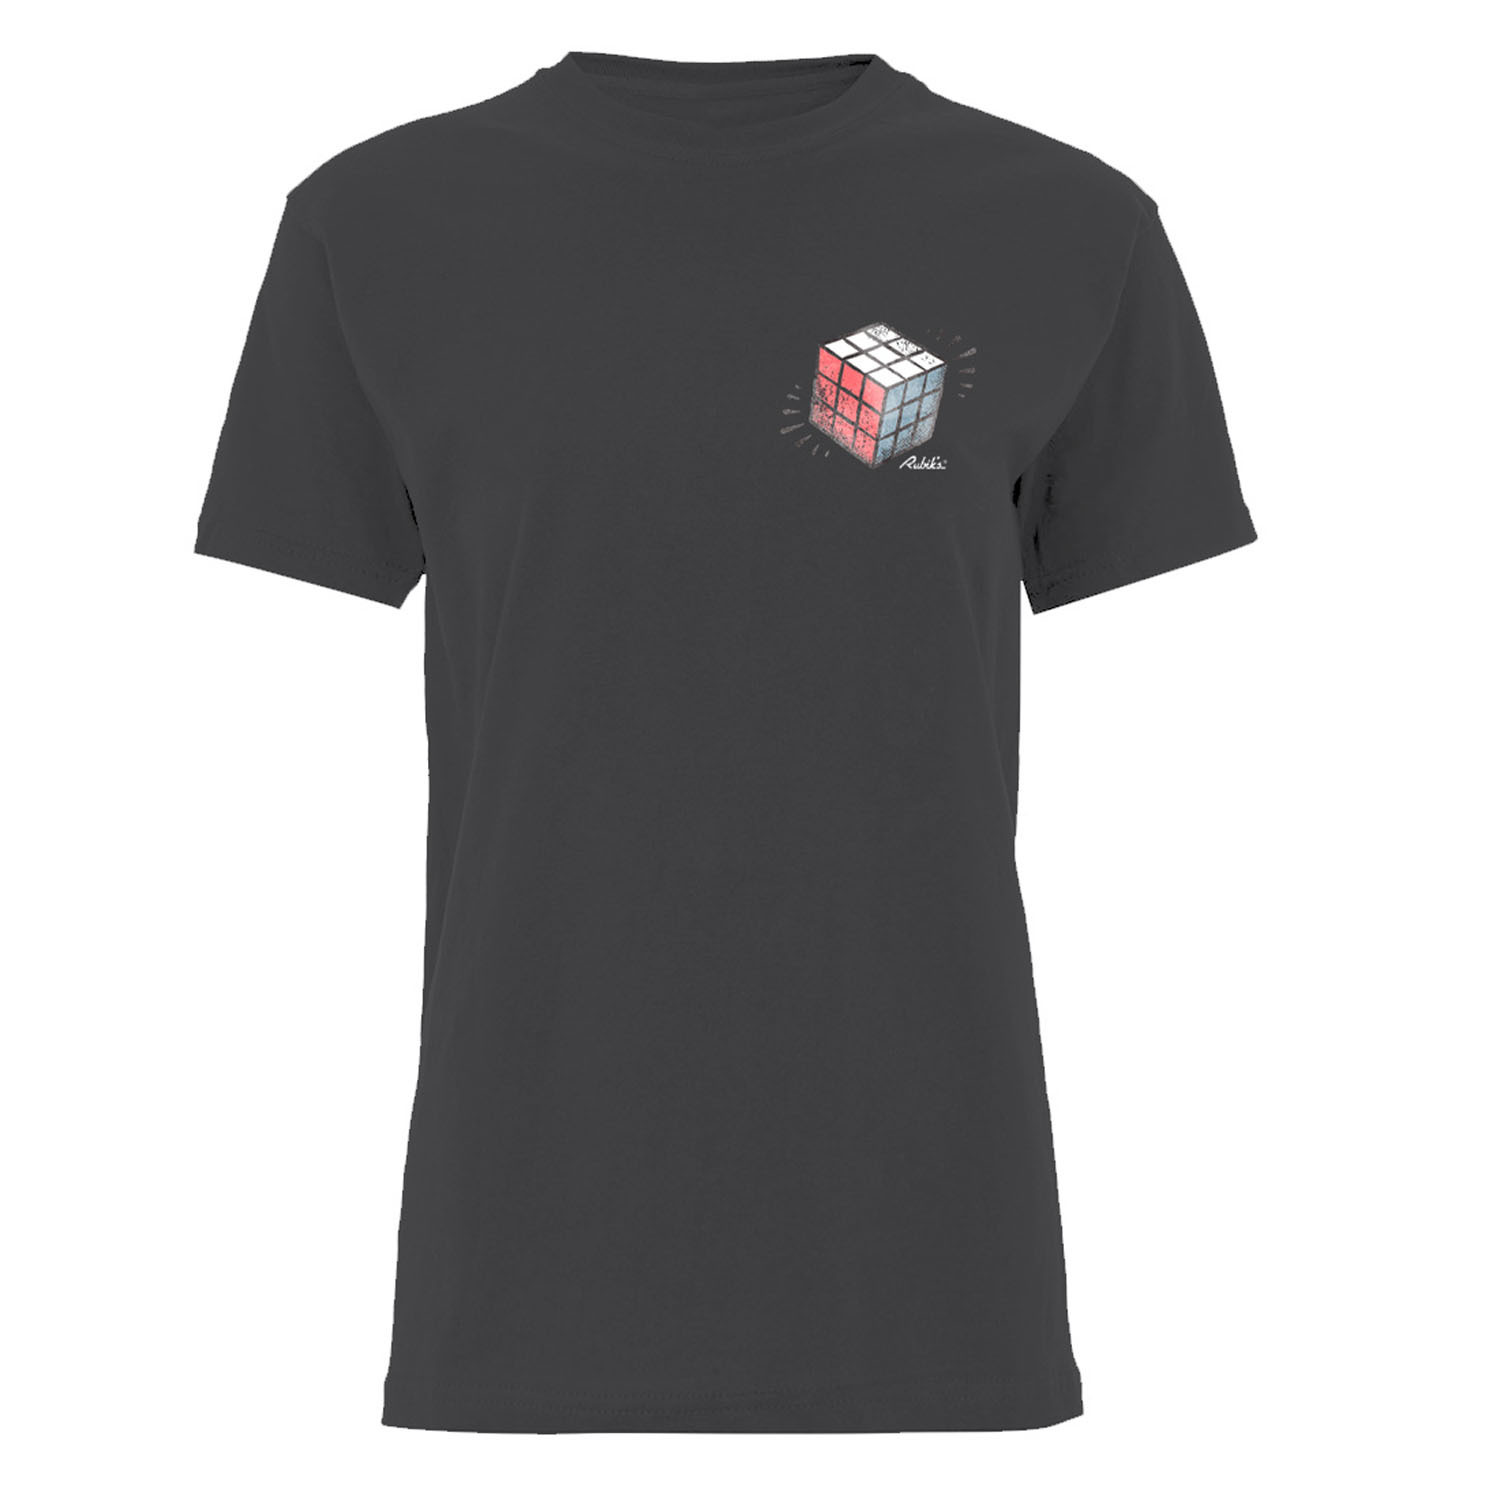 Rubix Cube T-Shirt - Black / L Image 1